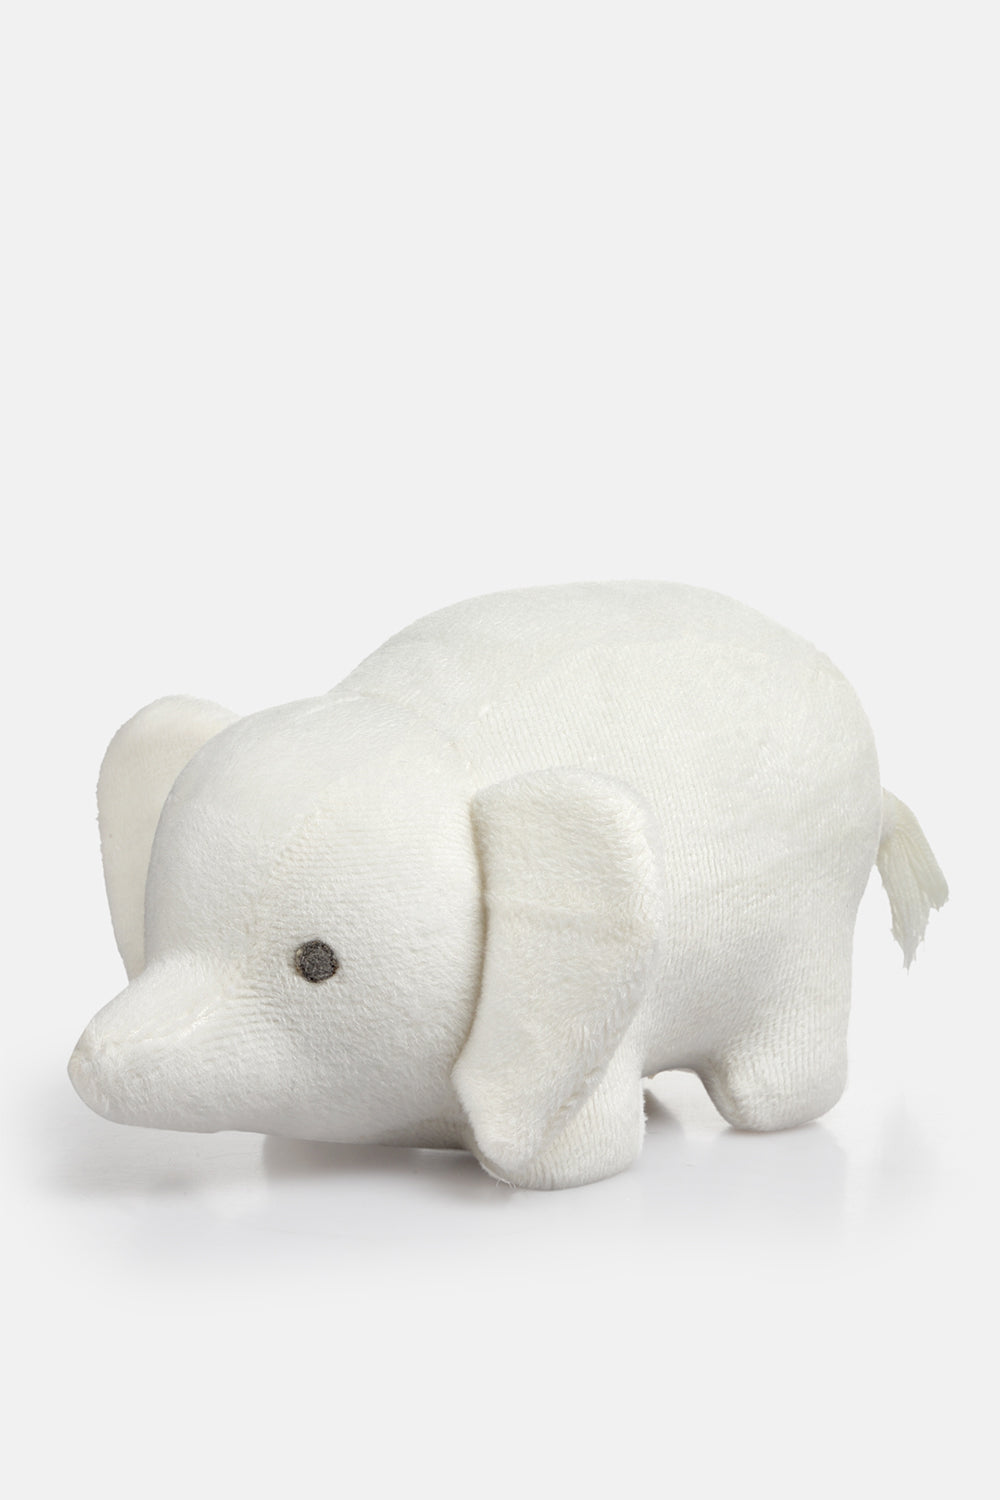 Joey Elephant Soft Toy